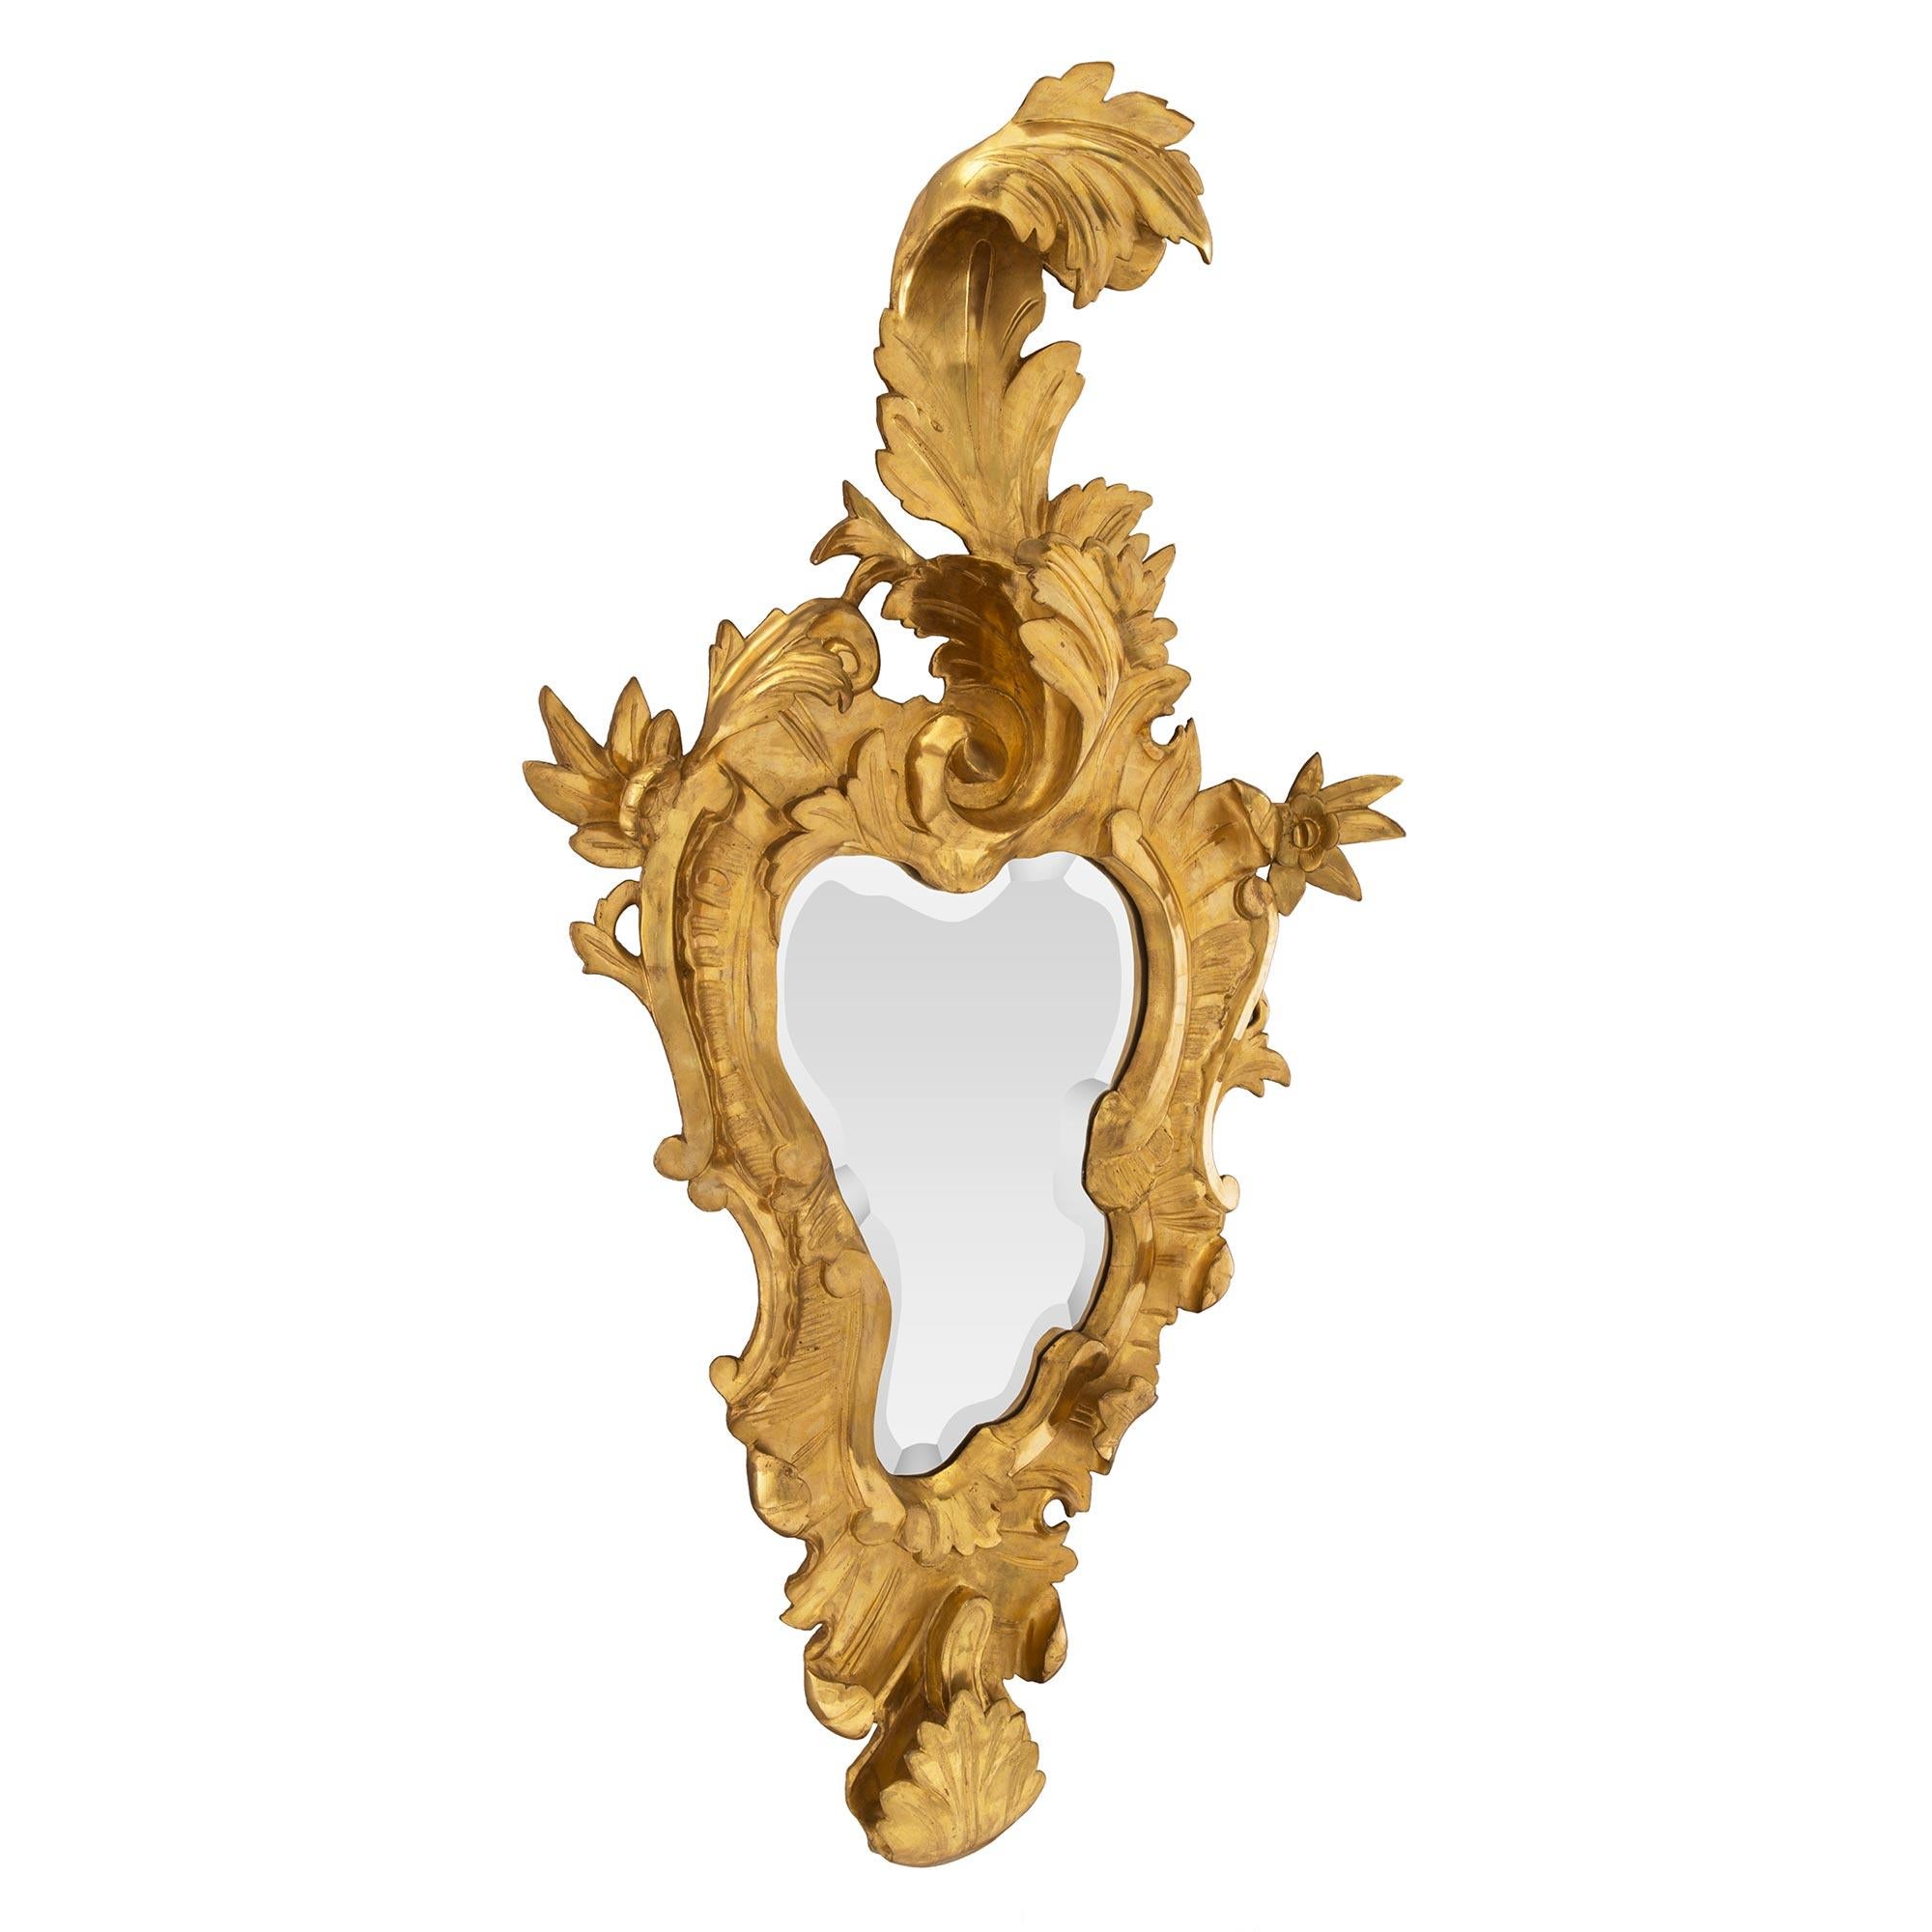 Une sensationnelle et véritable paire de miroirs vénitiens italiens en bois doré du 19ème siècle. Chaque miroir biseauté présente la plaque de miroir originale et suit le contour du cadre en bois doré finement sculpté. Le cadre présente un riche